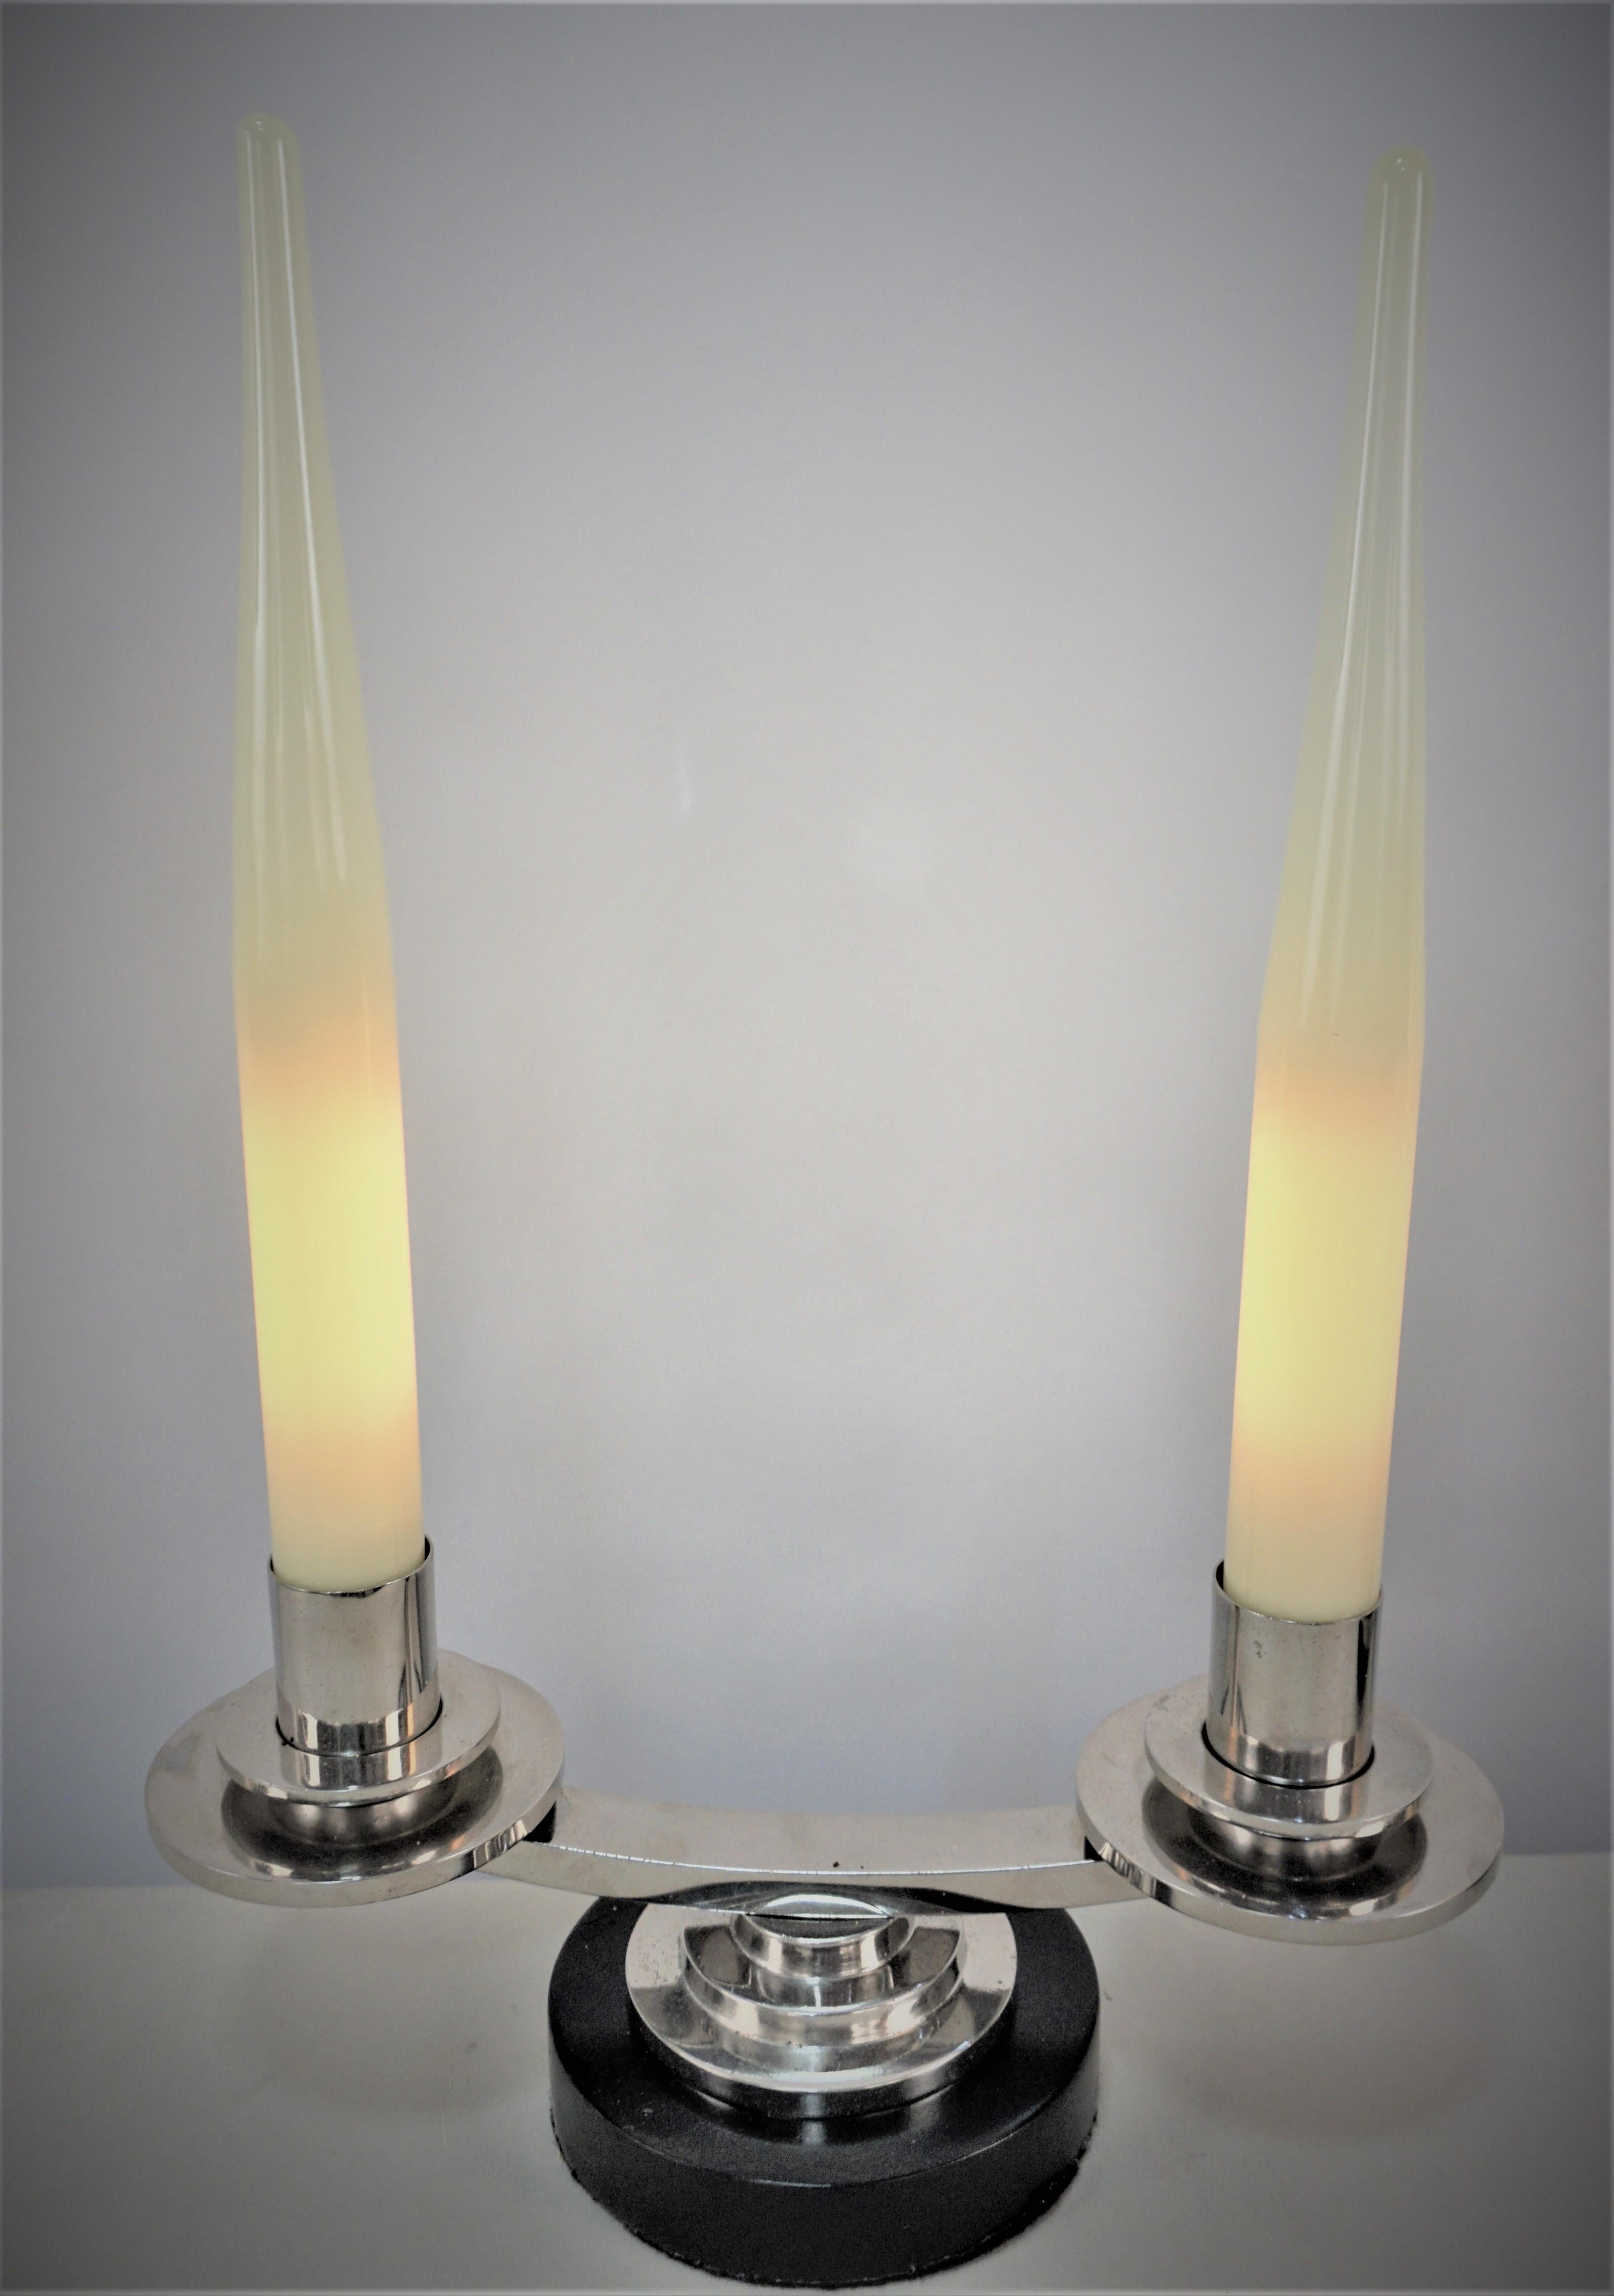 Paar doppelarmige einfache, aber elegante Kandelaberlampen aus Nickel auf Bronze mit lackiertem Holzsockel.
Diese Kandelaberlampen sind mit kerzenförmigem Glas ausgestattet, das jede Glühbirne abdeckt.